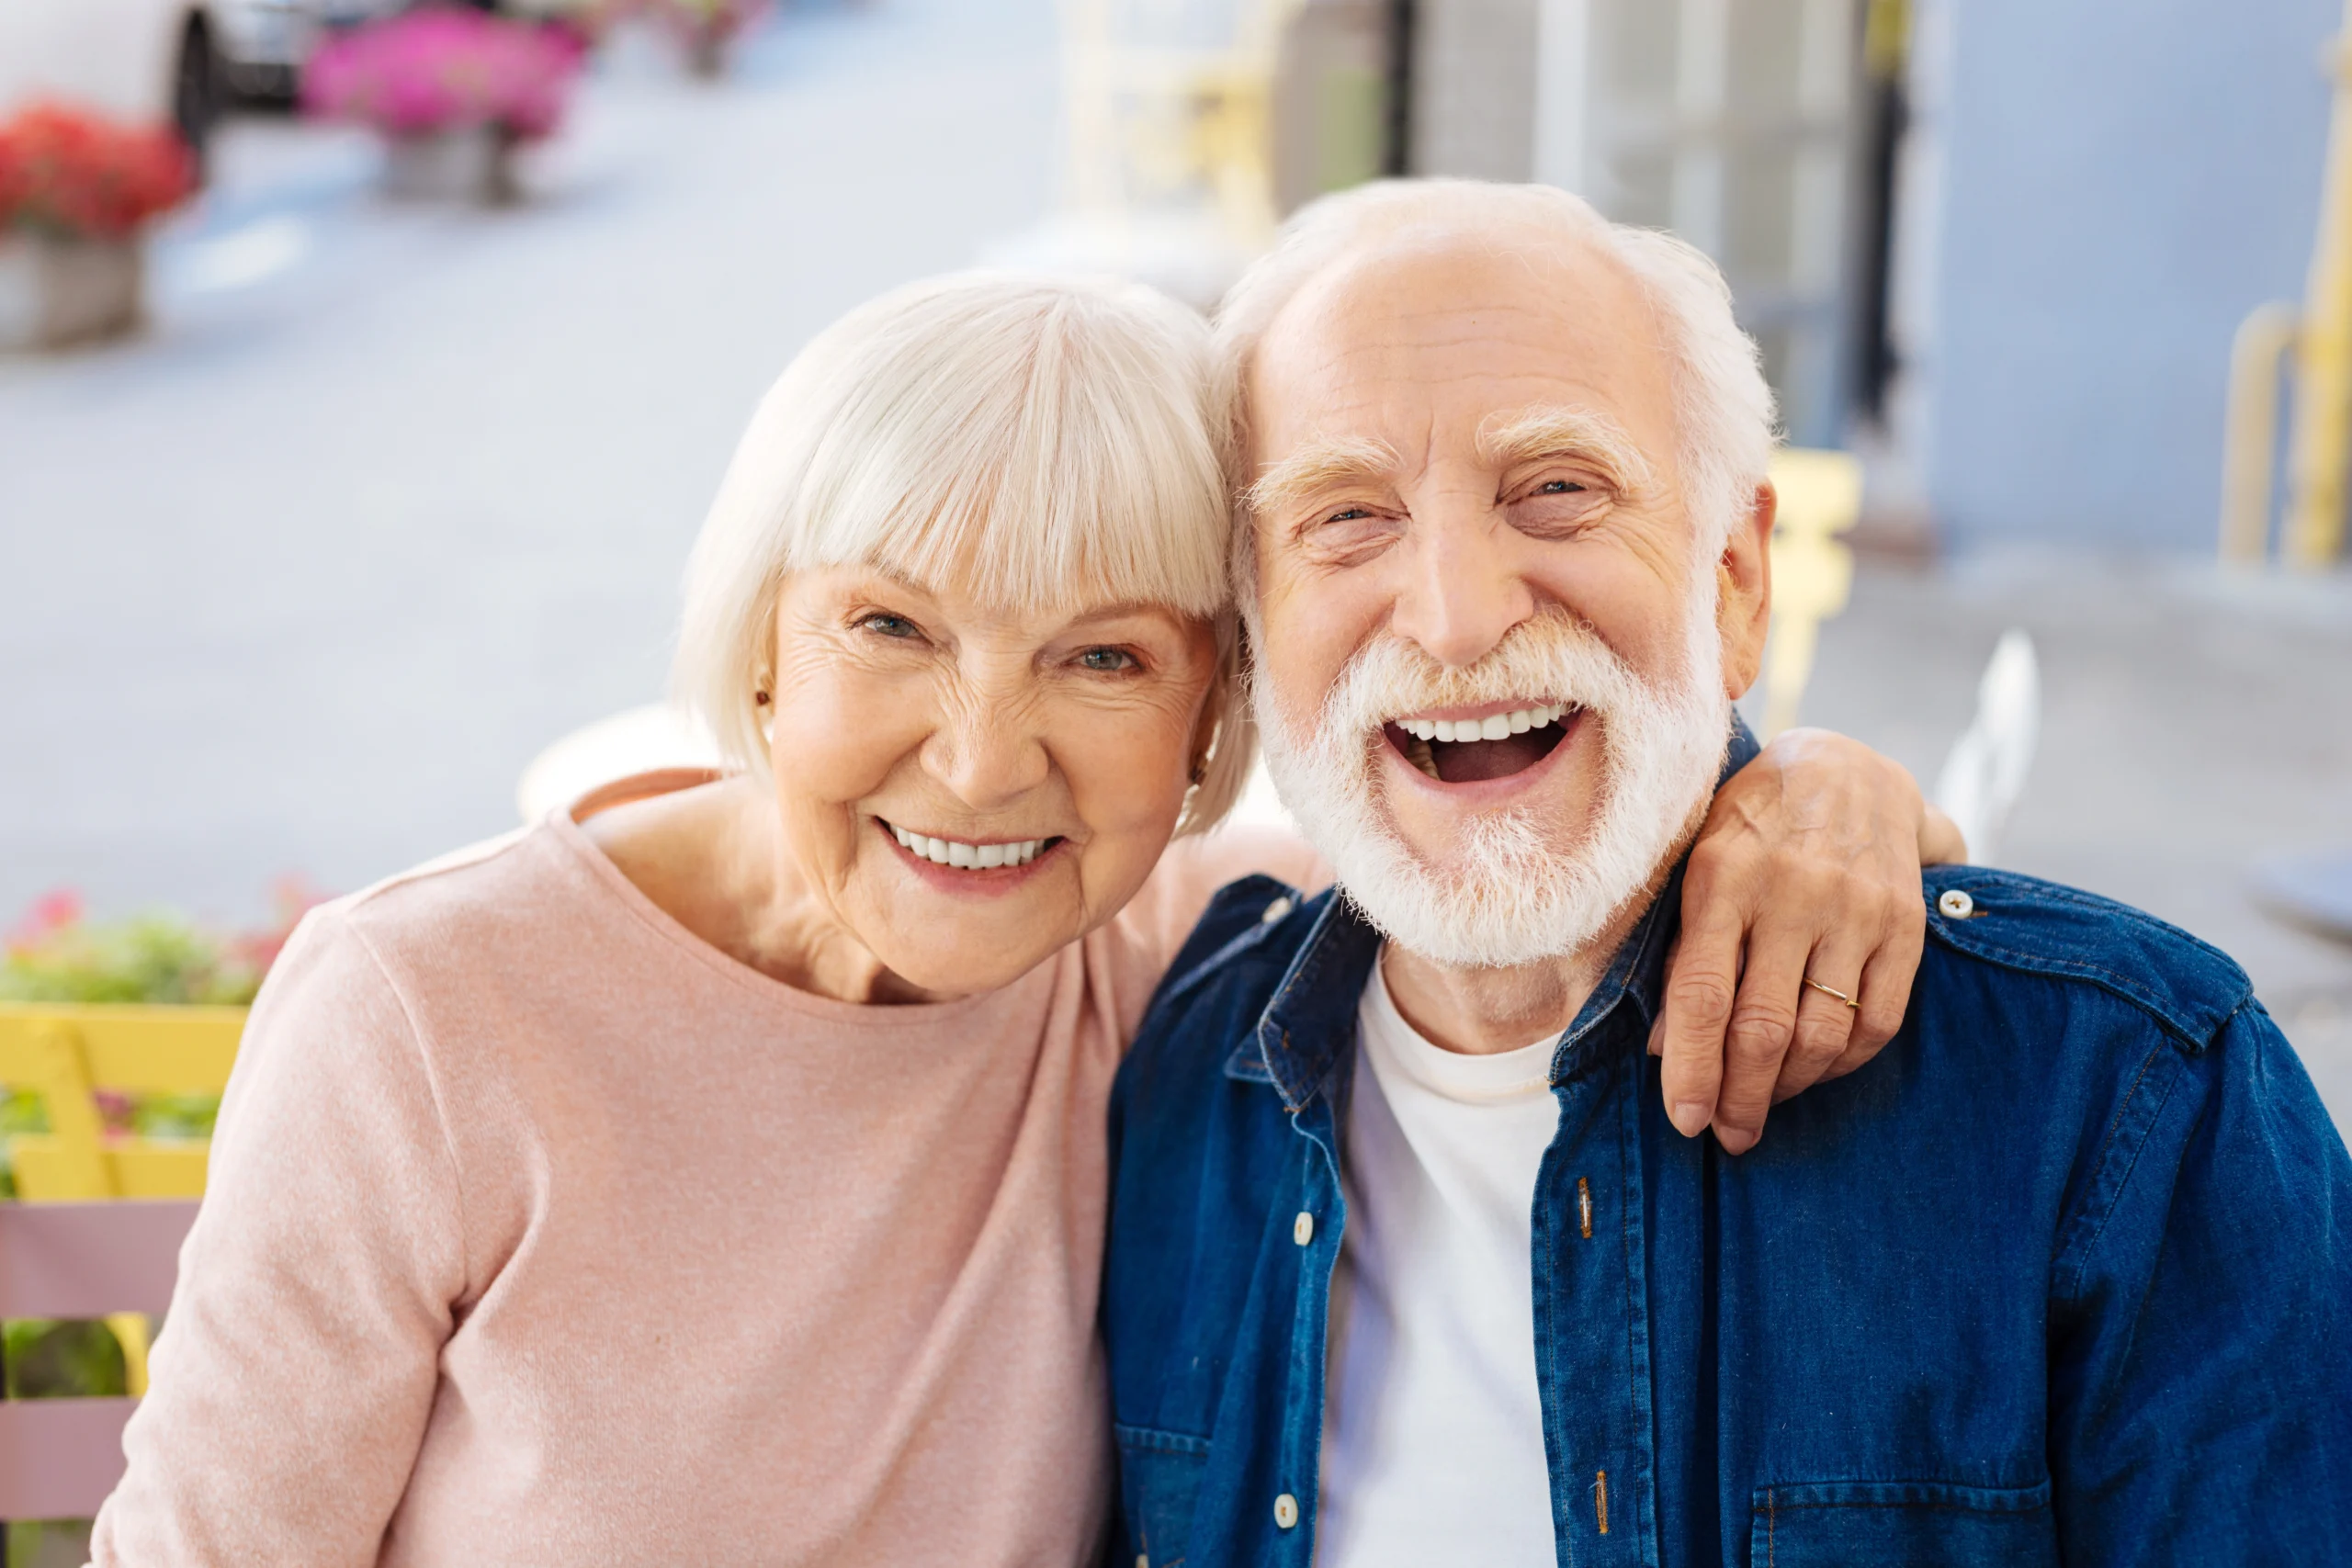 W jaki sposób mikrobiom zmienia się wraz ze starzeniem się organizmu? Dlaczego osoby 60+ potrzebują dedykowanego produktu? Uśmiechnięta para seniorów w domu uśmiecha się do obiektywu.